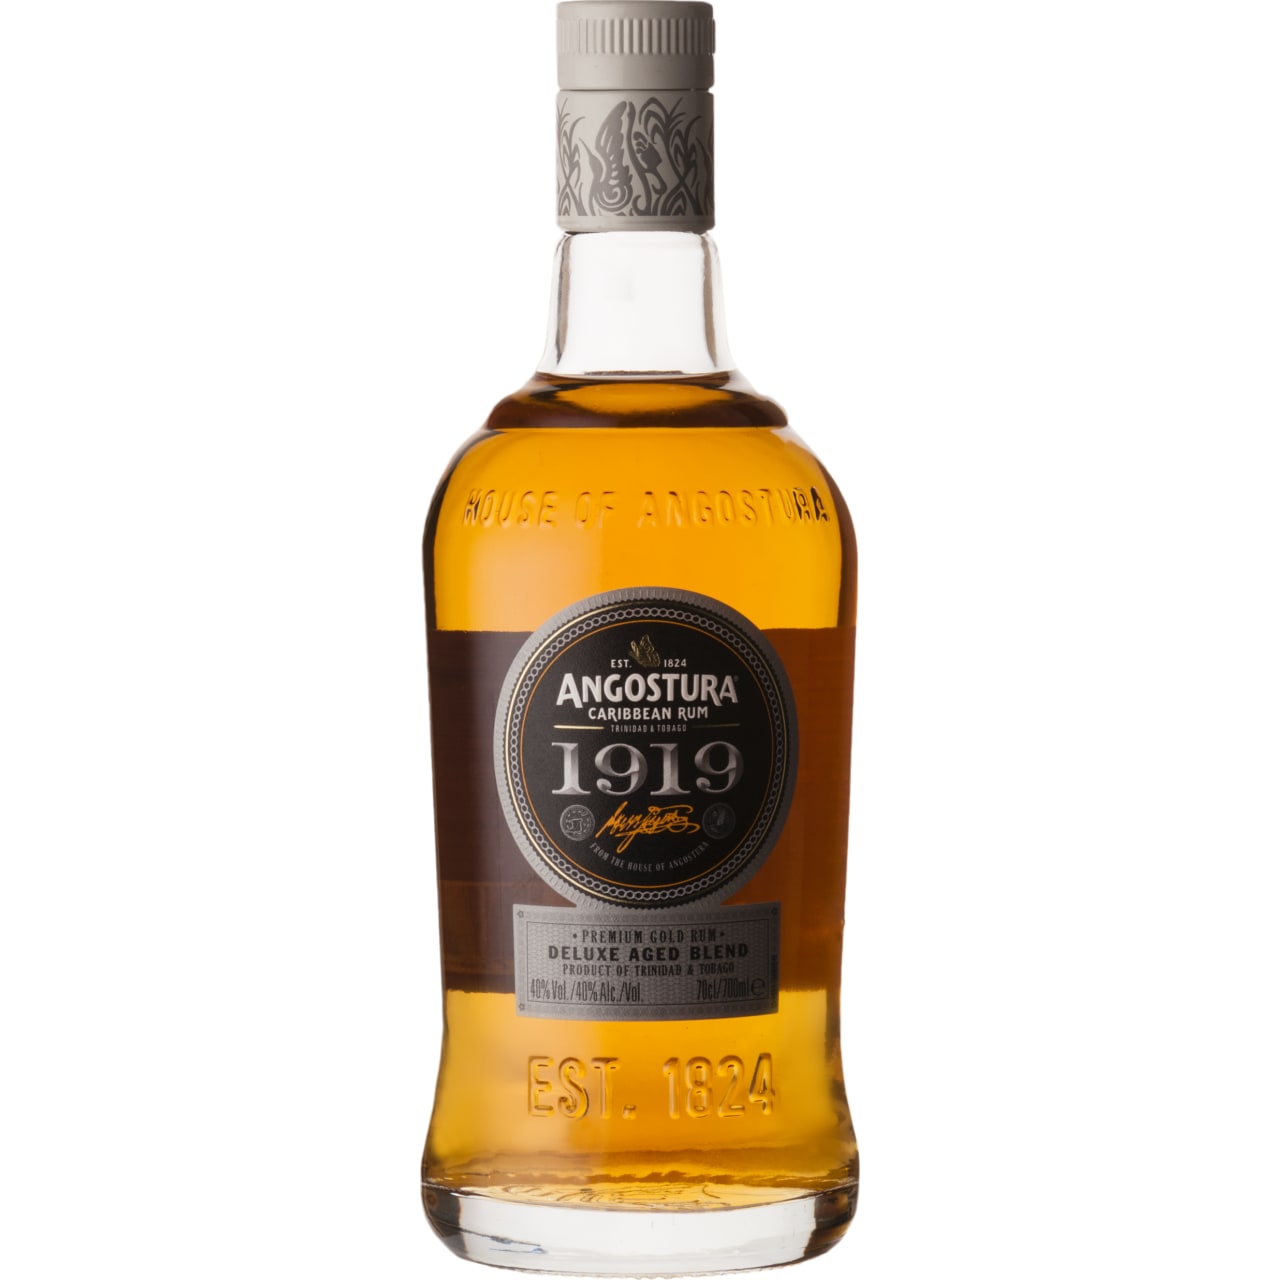 Angostura 1919 Aged Rum